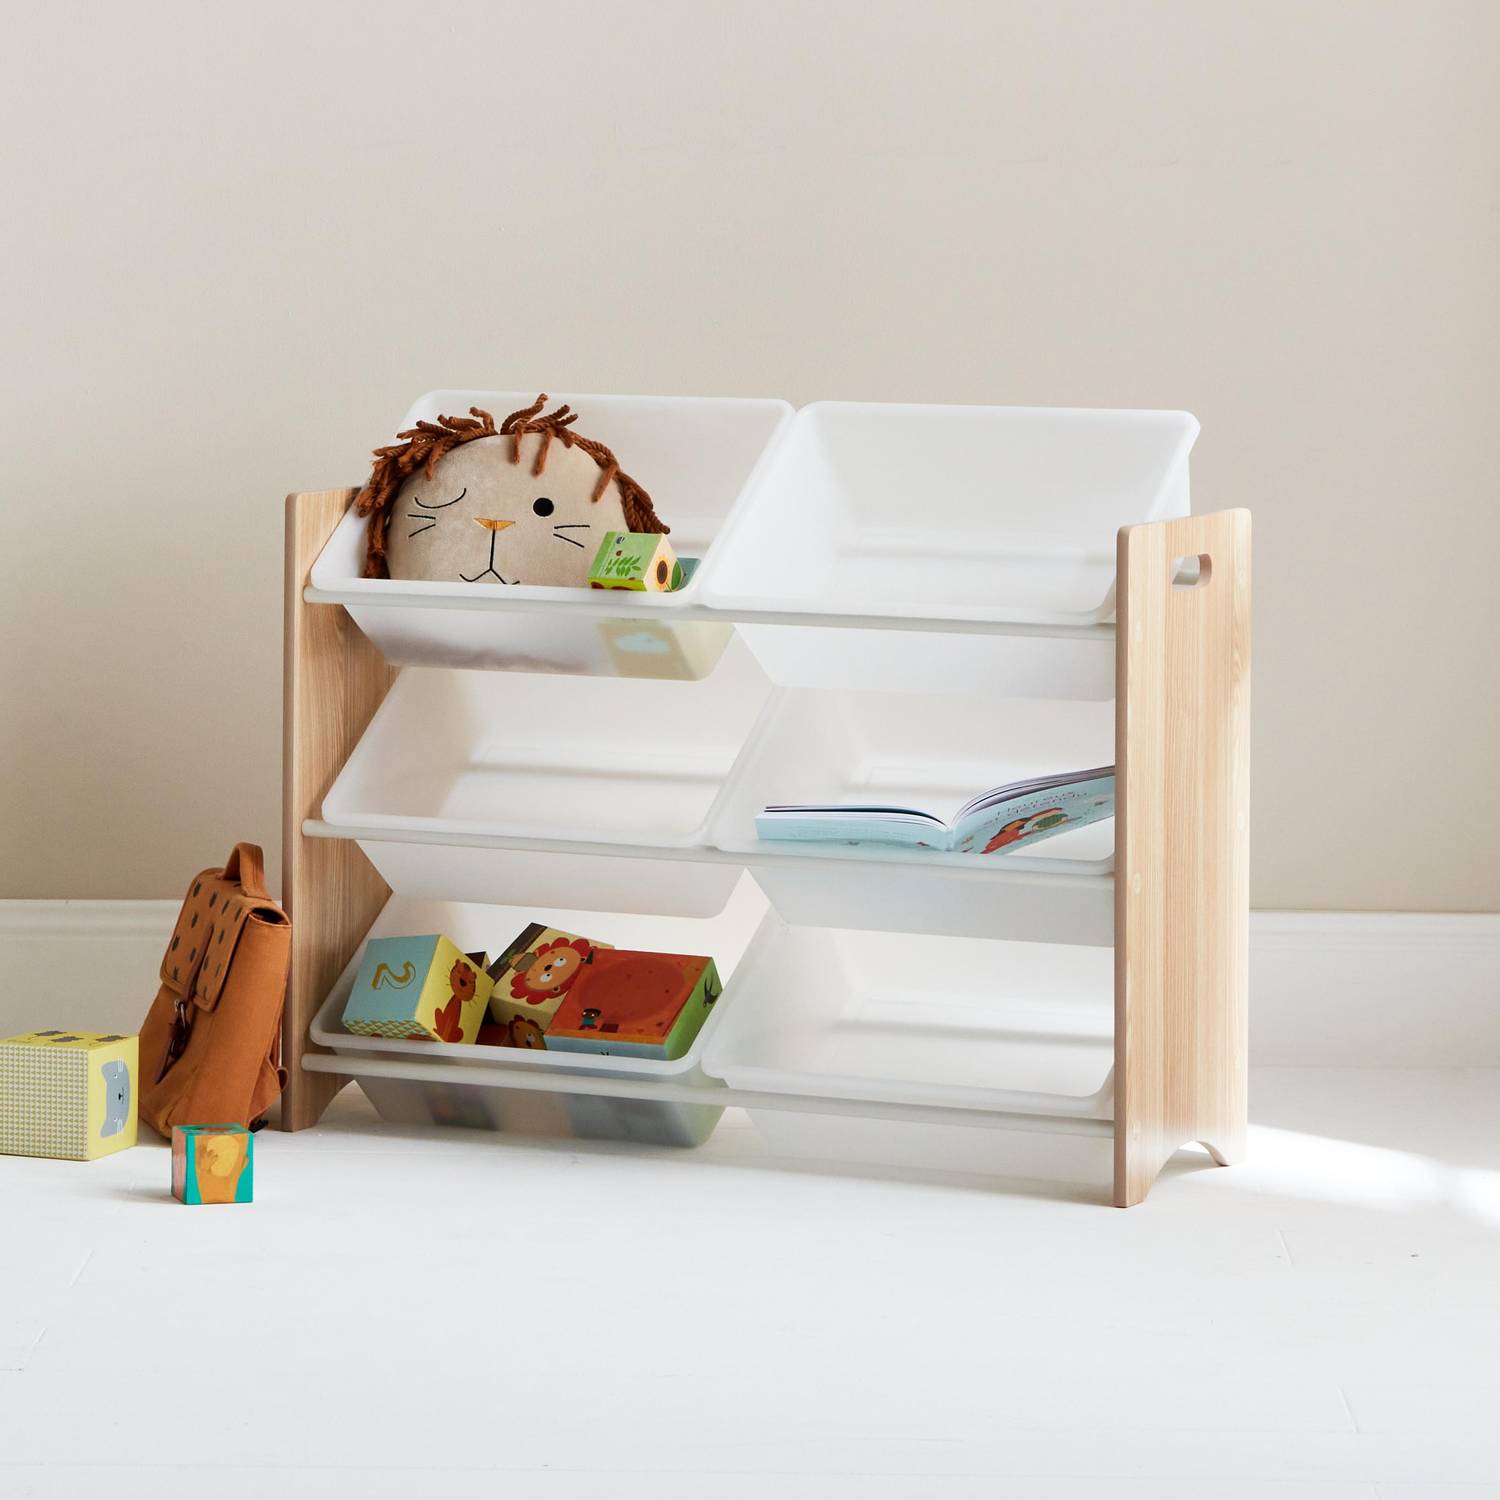 Unidade de armazenamento para crianças com 6 compartimentos - Tobias - MDF, madeira natural, L 84 x D 29,5 x H 60cm Photo2